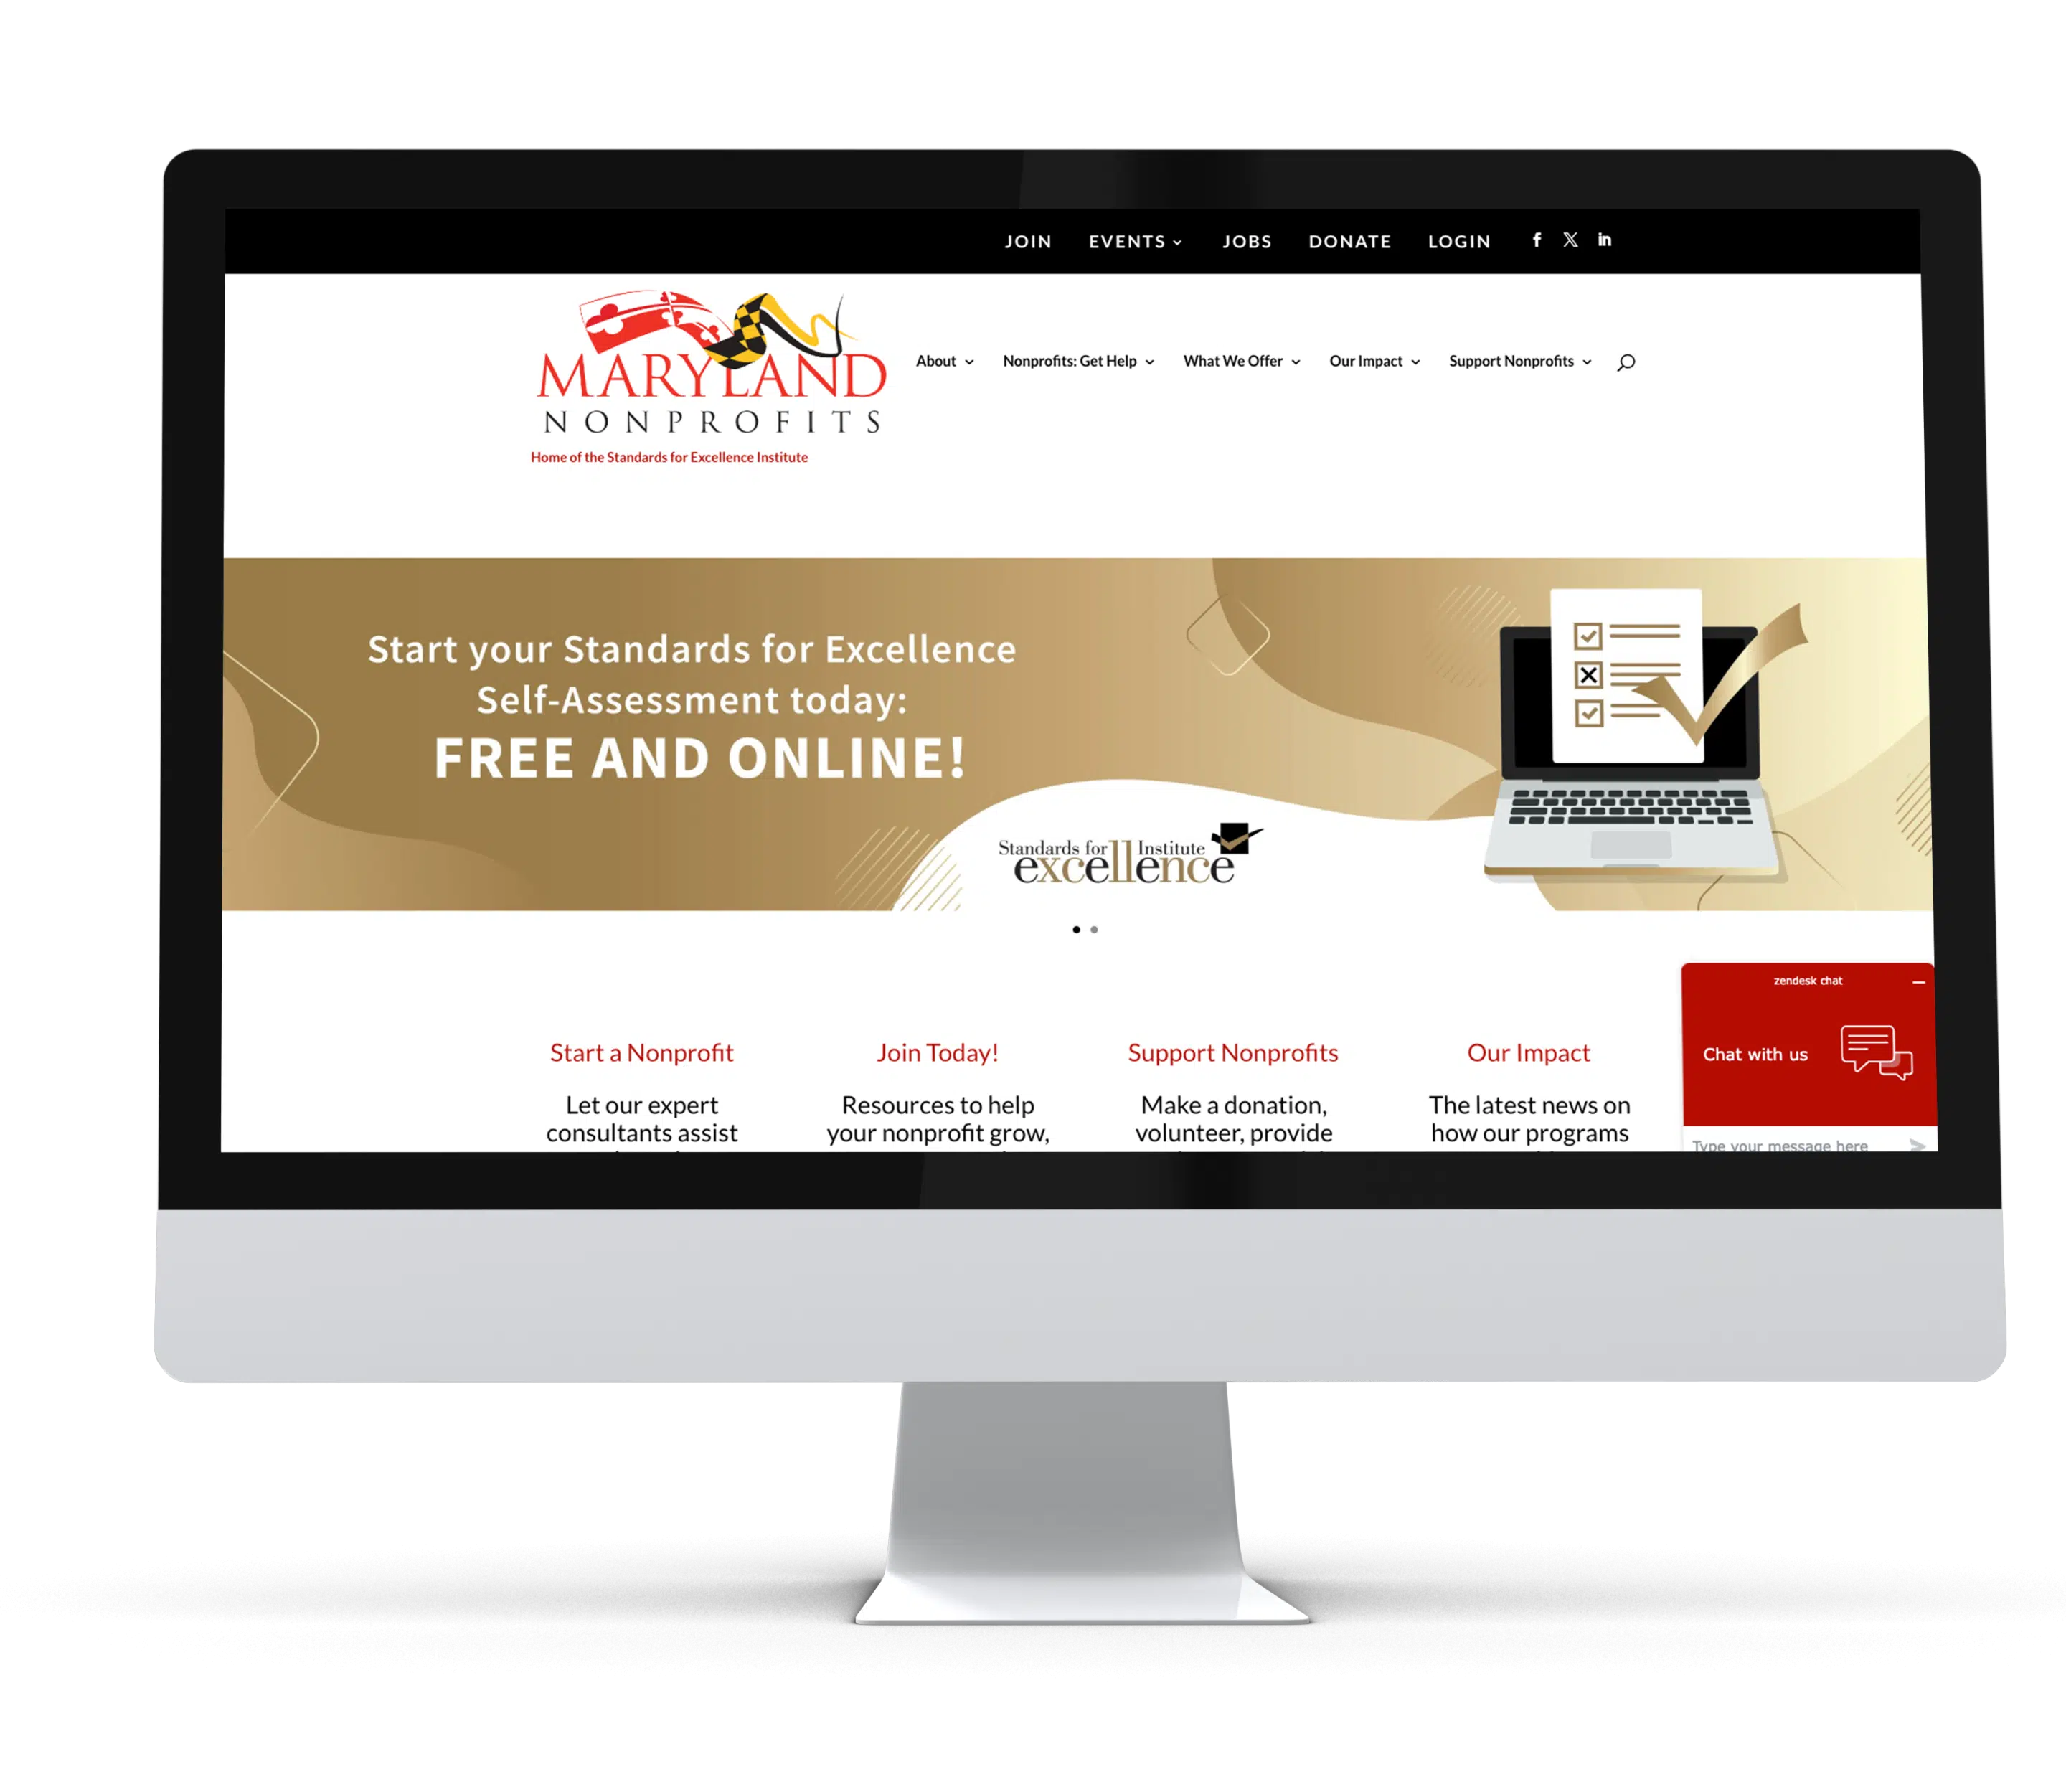 MarylandNonprofits website displayed on a desktop